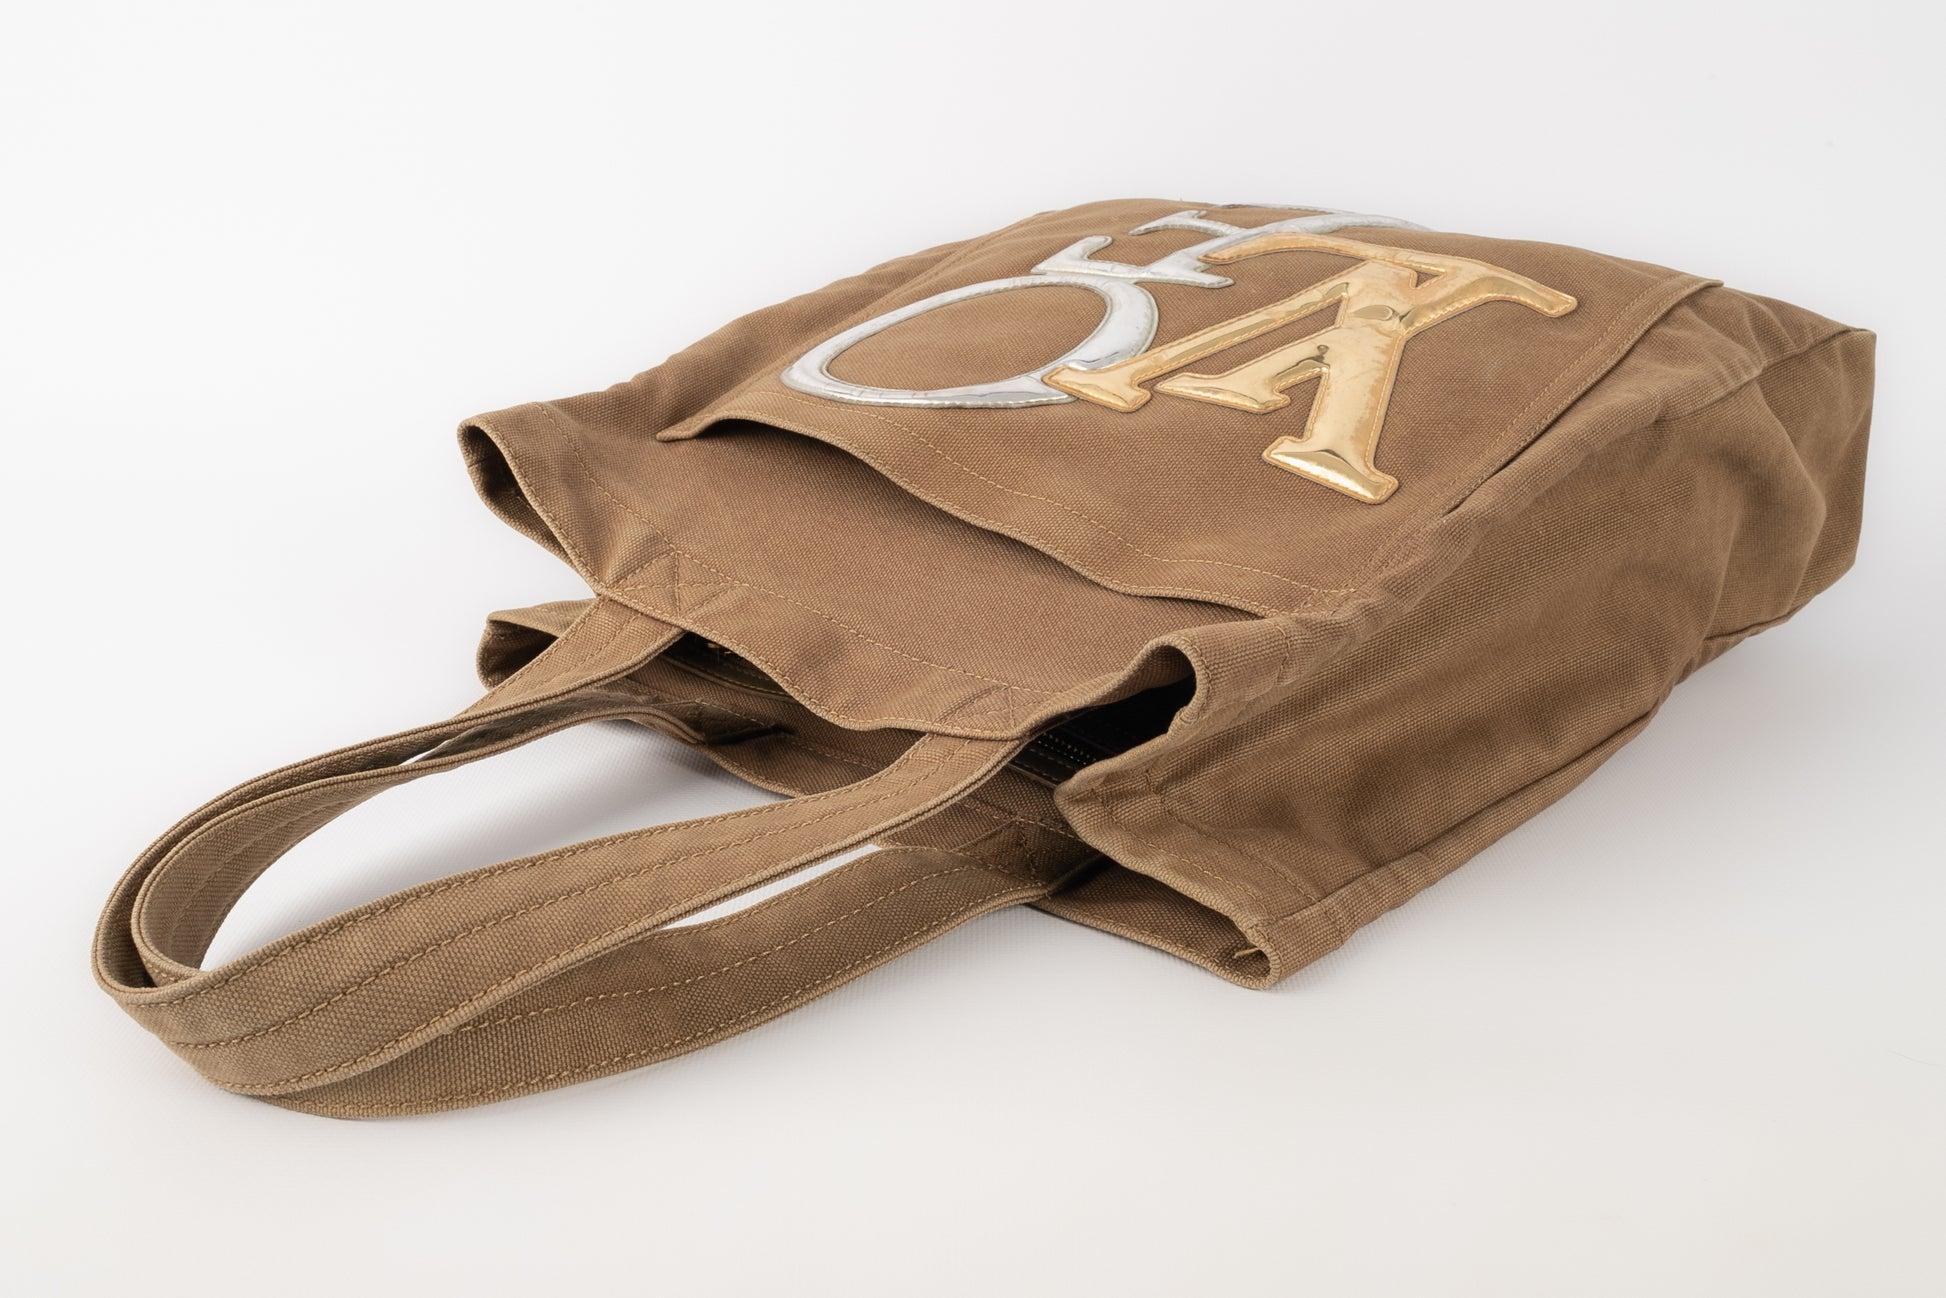 Louis Vuitton - (Made in Italy) Khakifarbene Leinentasche mit Seriennummer. Collection'S 2007. Zu erwähnen ist, dass die Schriftzüge auf der Tasche abgenutzt sind.

Zusätzliche Informationen:
Zustand: Anständiger Zustand
Abmessungen: Höhe: 35 cm -